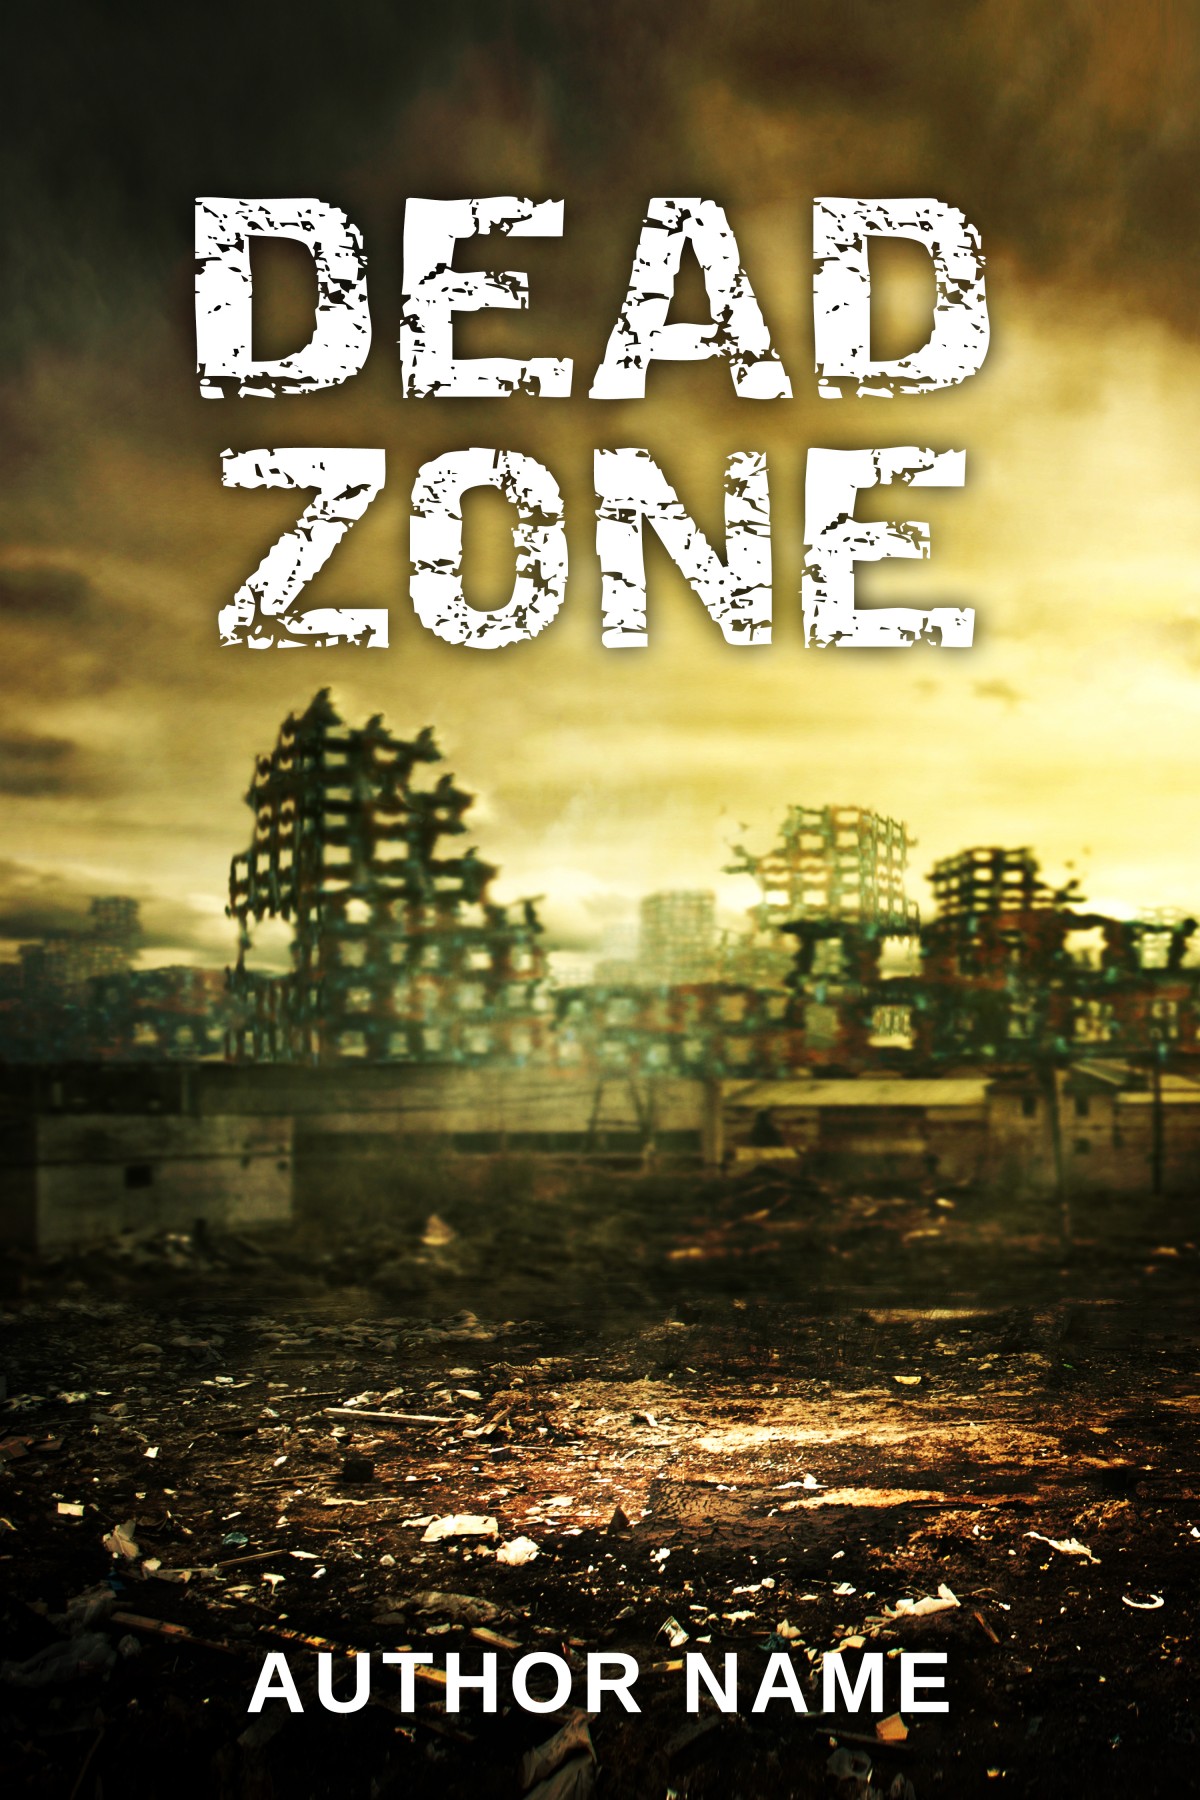 Dead Zone Adventure download the last version for windows